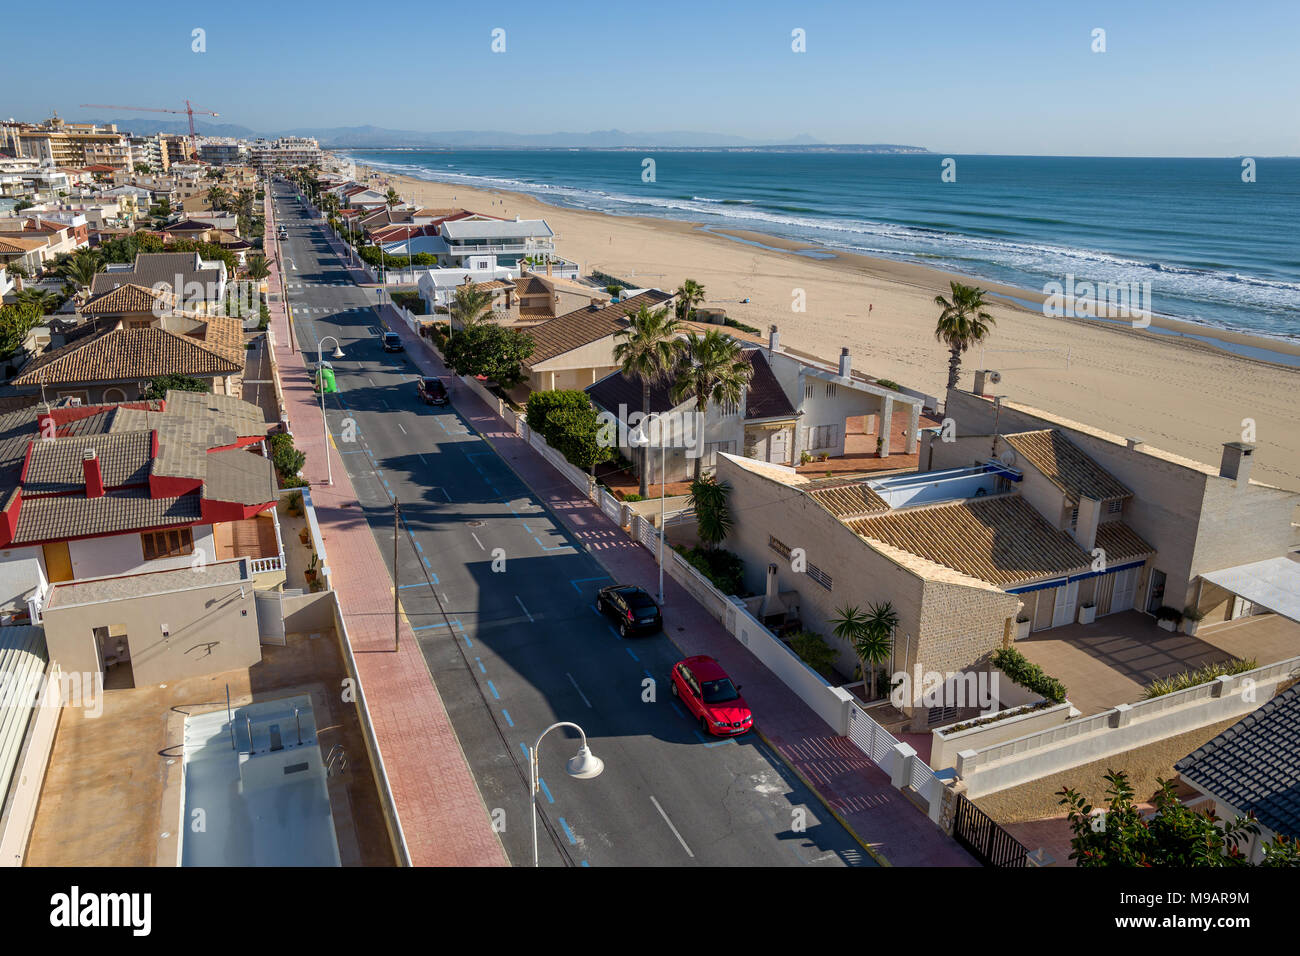 The beach at Guardamar del Segura in Spain Stock Photo